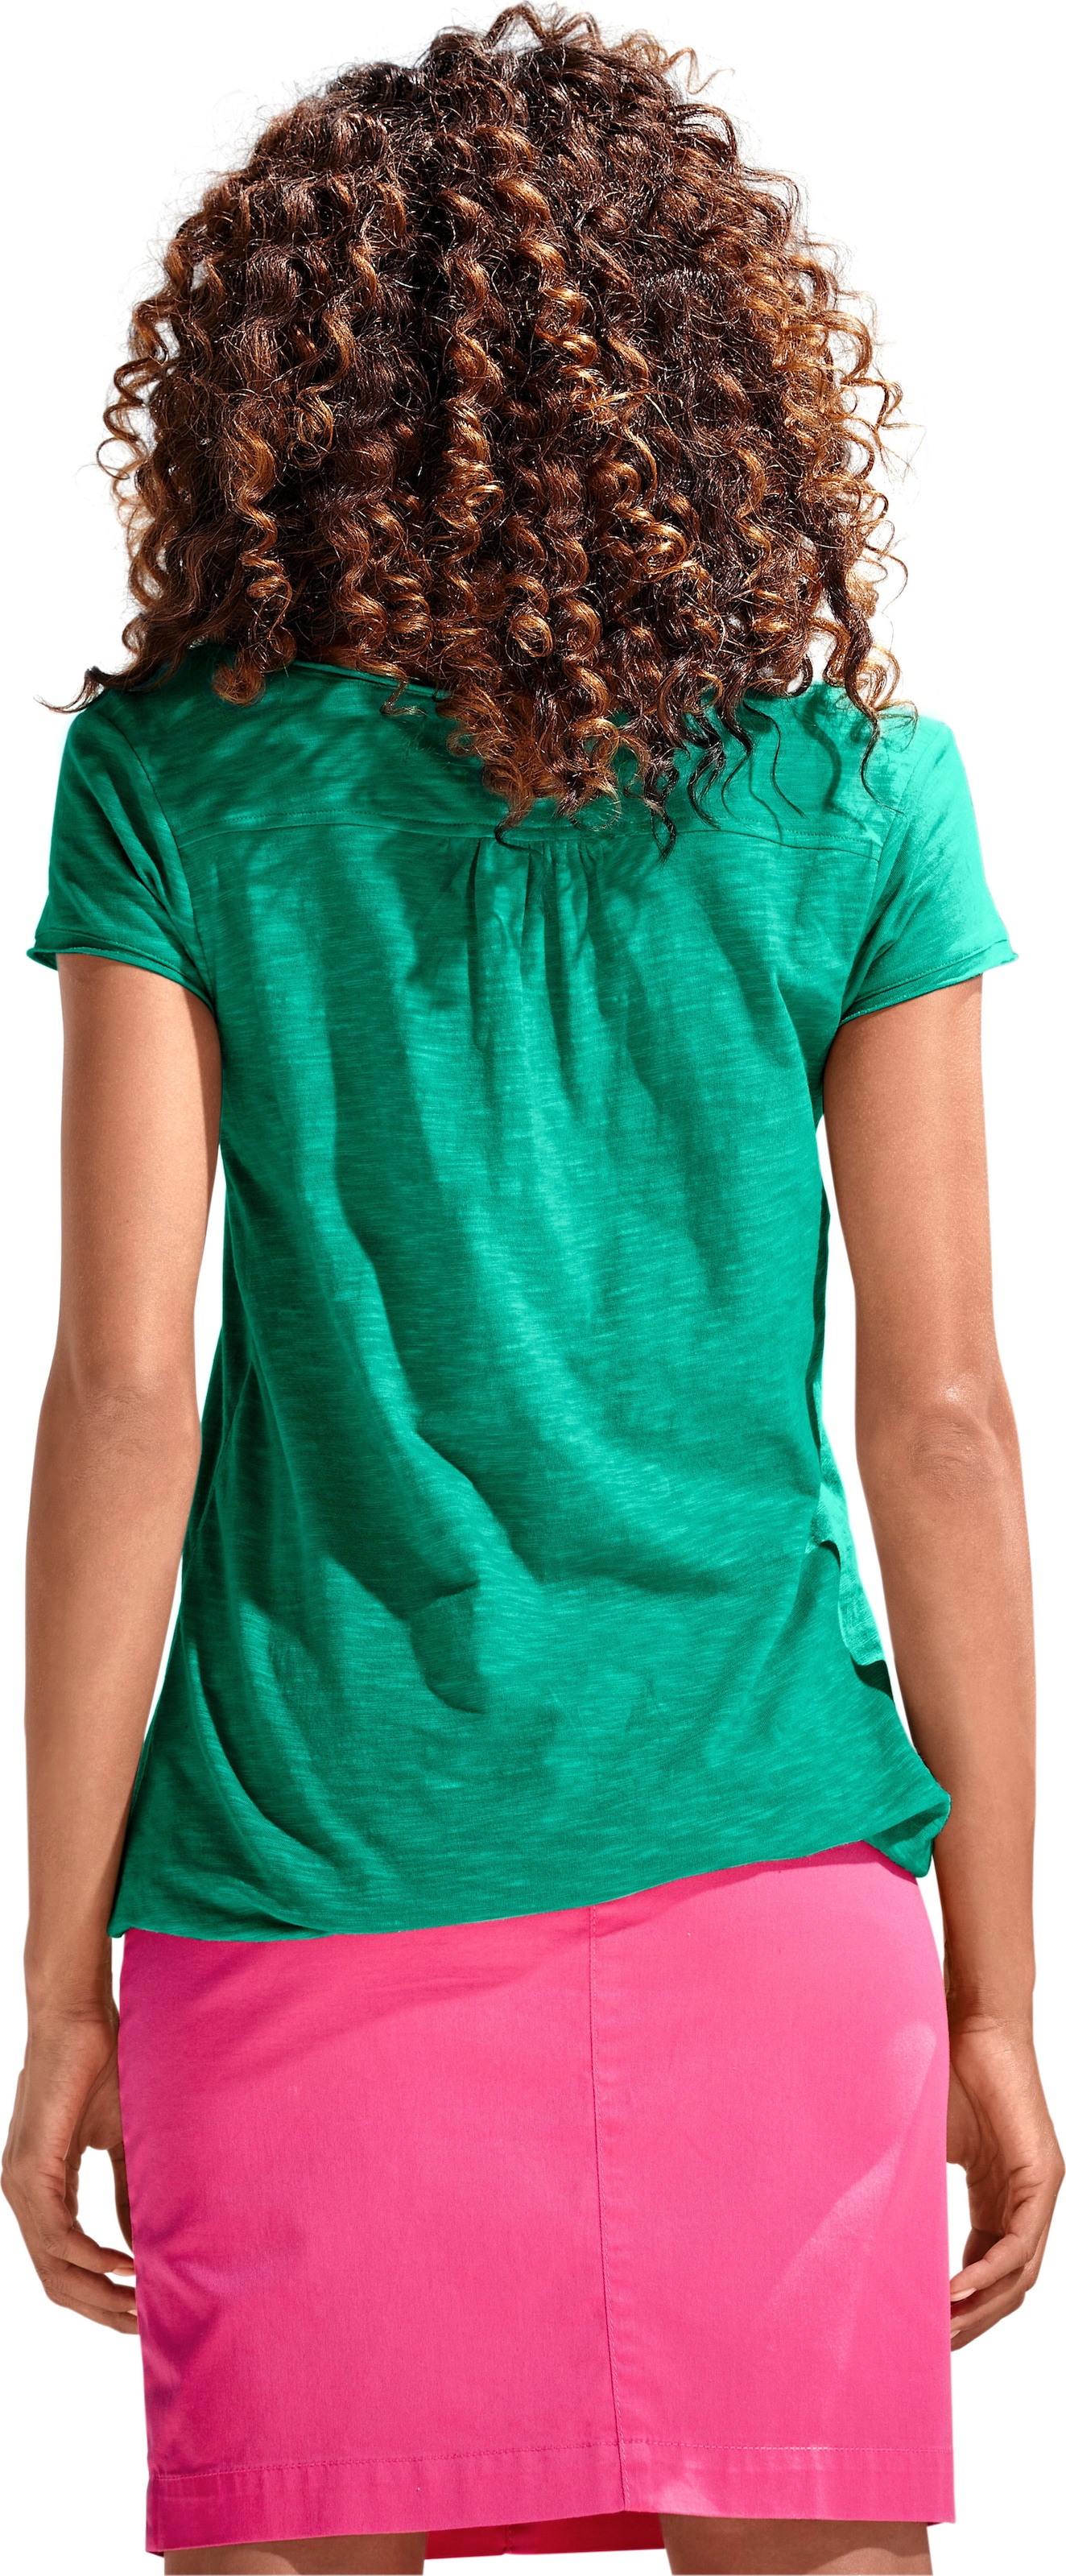 shirt im günstig Kaufen-Rundhals-Shirt in grün von heine. Rundhals-Shirt in grün von heine <![CDATA[Rundhals-Shirt Moderne Form mit Gummizugbund. Mit Spitzen-Details und schimmernden Knöpfen. Leichte Shirtware mit Flammé-Effekt.]]>. 